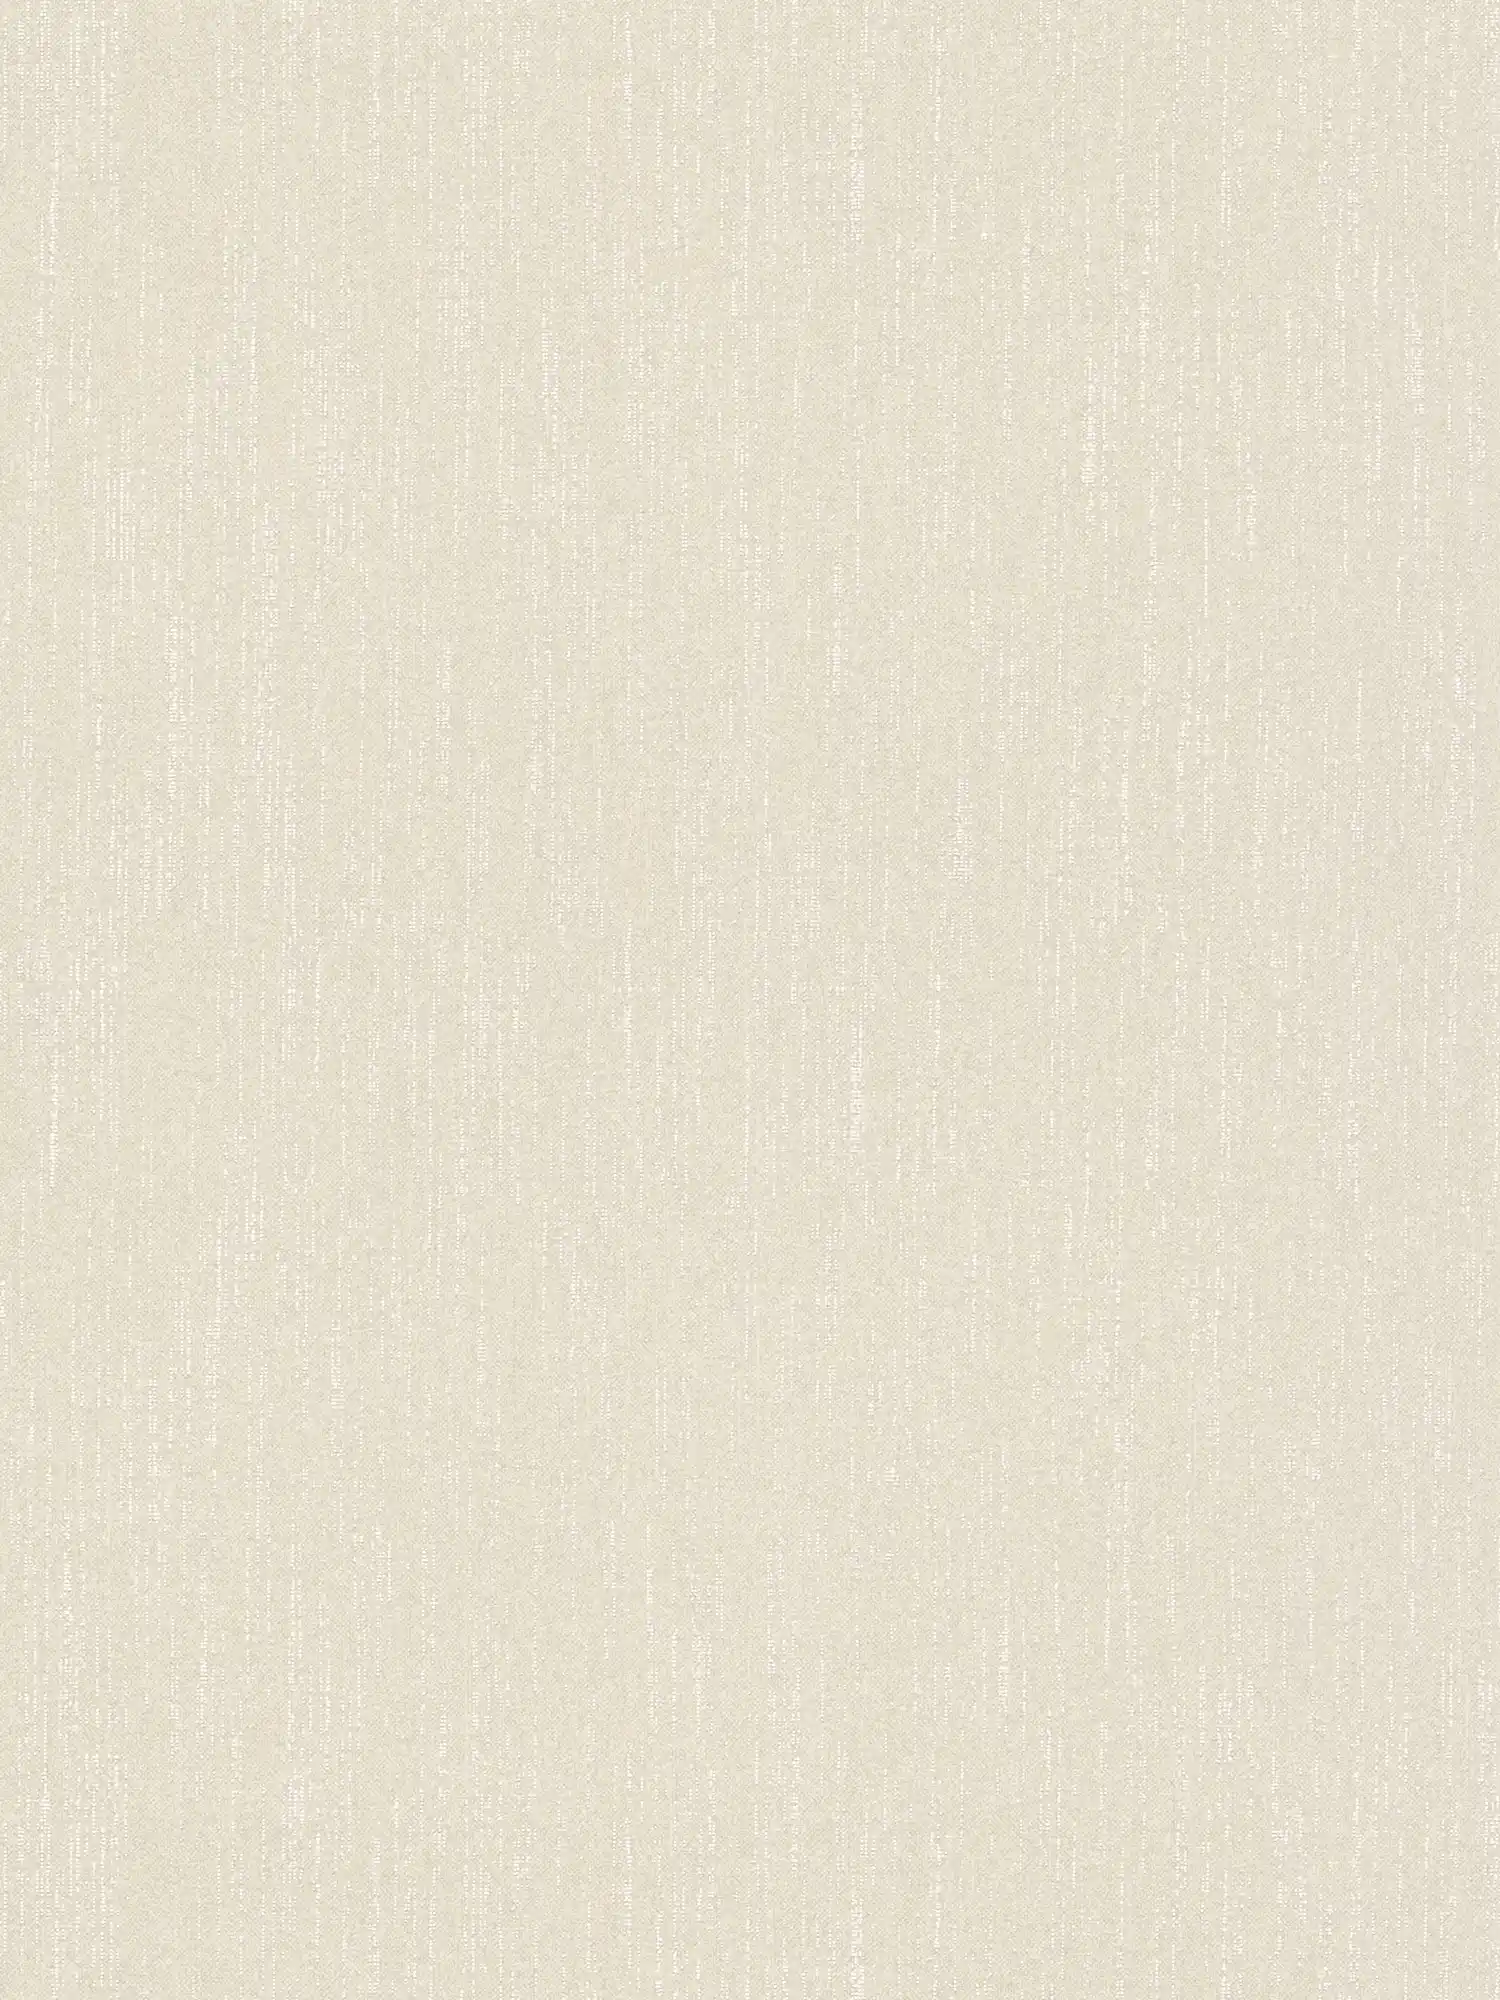 Carta da parati lucida bianco crema con ottica tessile ed effetto shimmer - bianco
